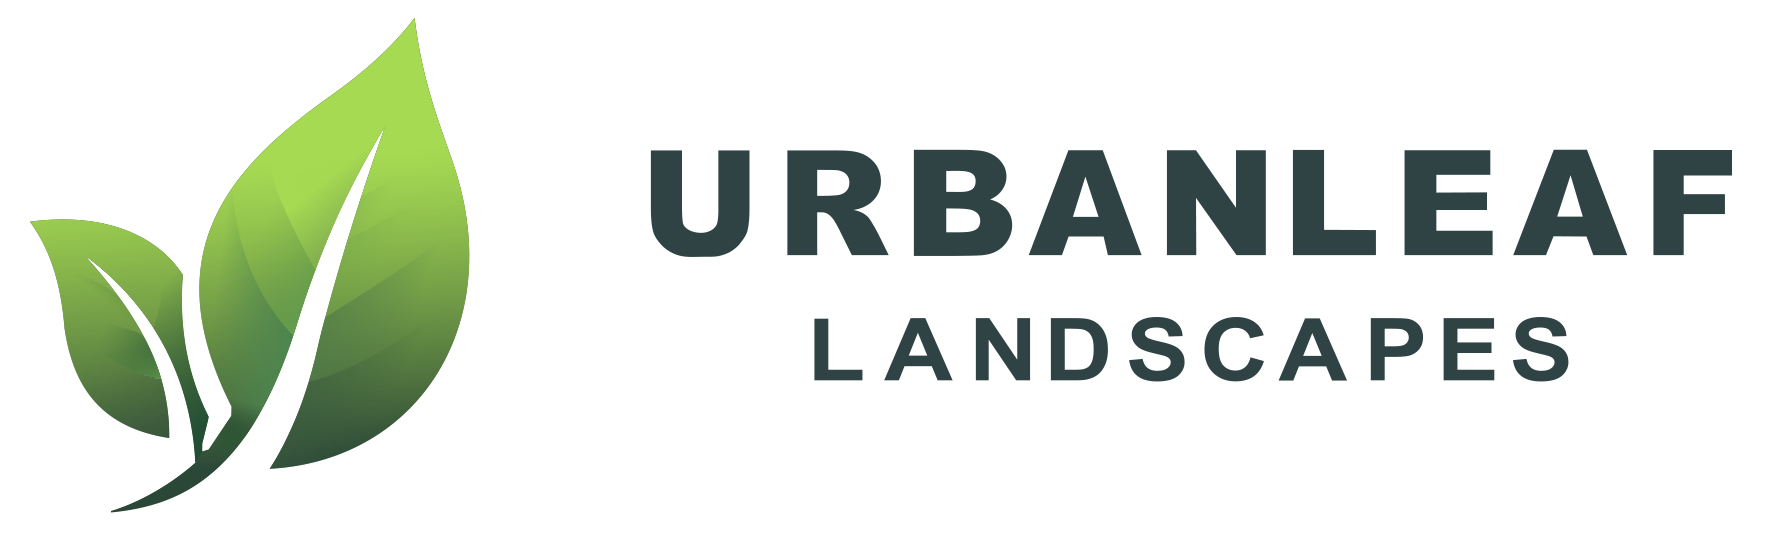 Urbanleaf Landscapes